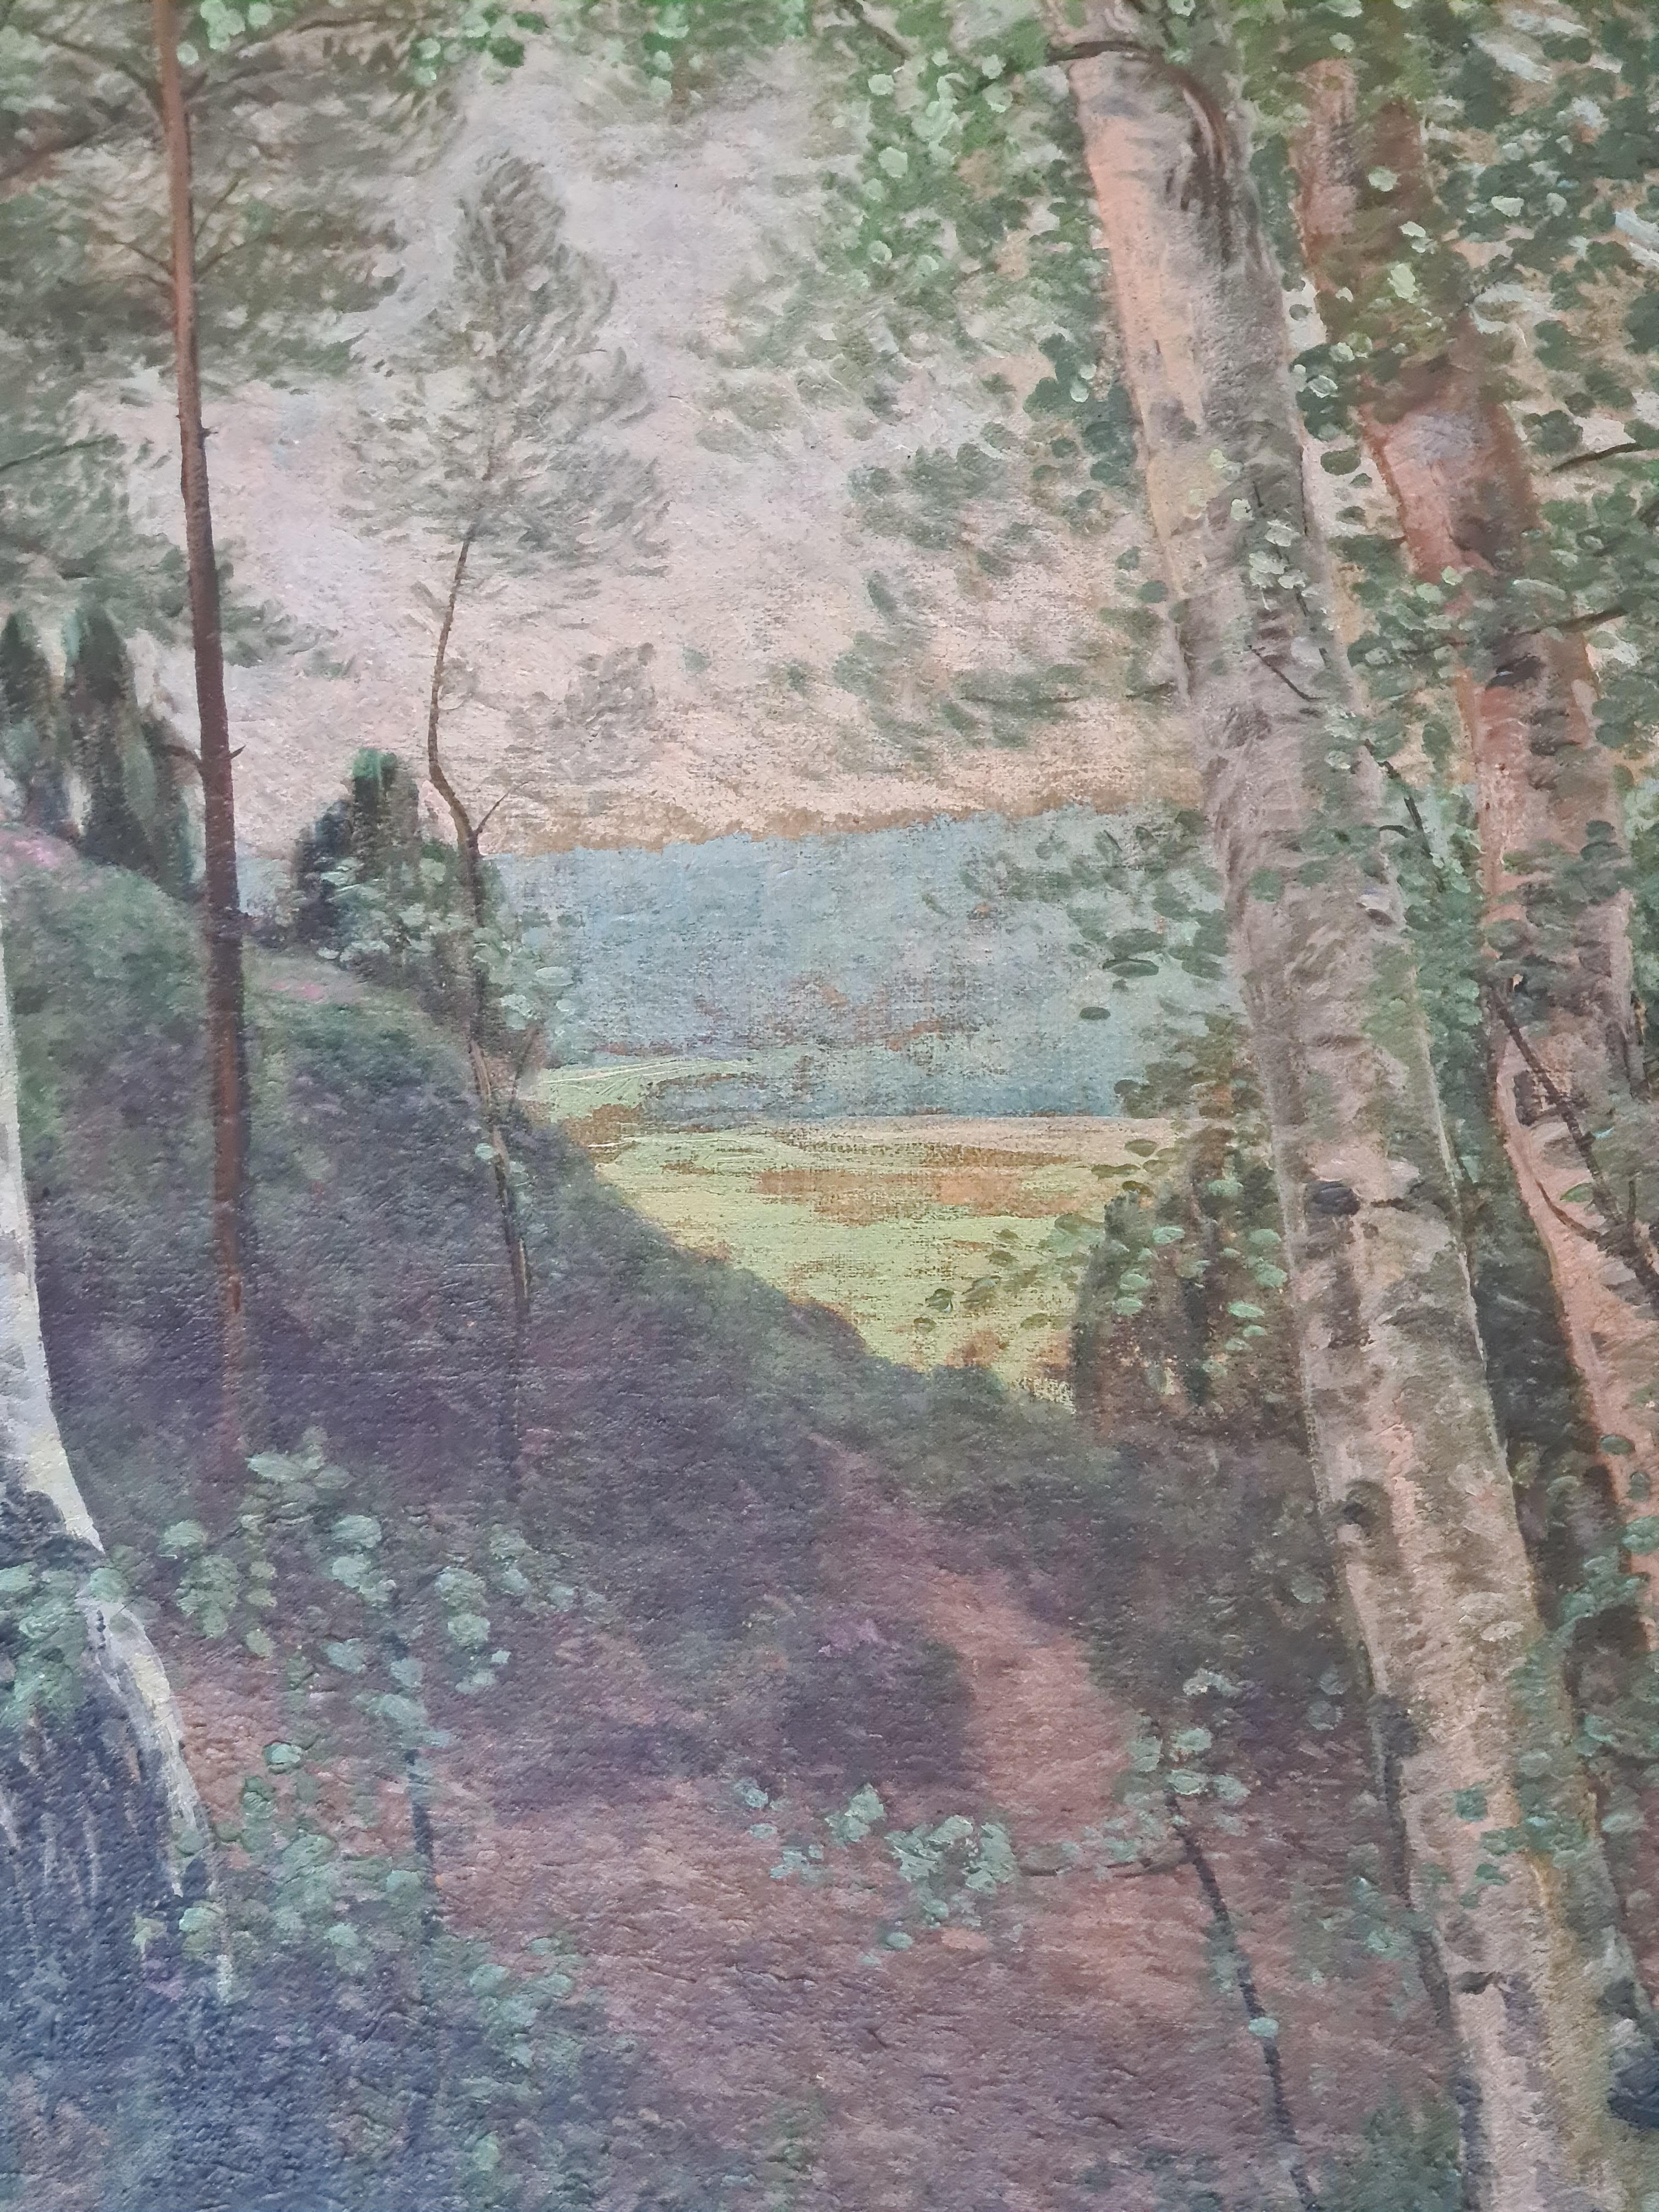 Vue de forêt de l'école de Barbizon, huile sur toile d'Emile Roux-Fabre. Le tableau est signé et daté en bas à gauche avec une dédicace.

Une vue charmante d'une clairière forestière menant à un paysage de vallée au-delà. L'artiste a capturé la